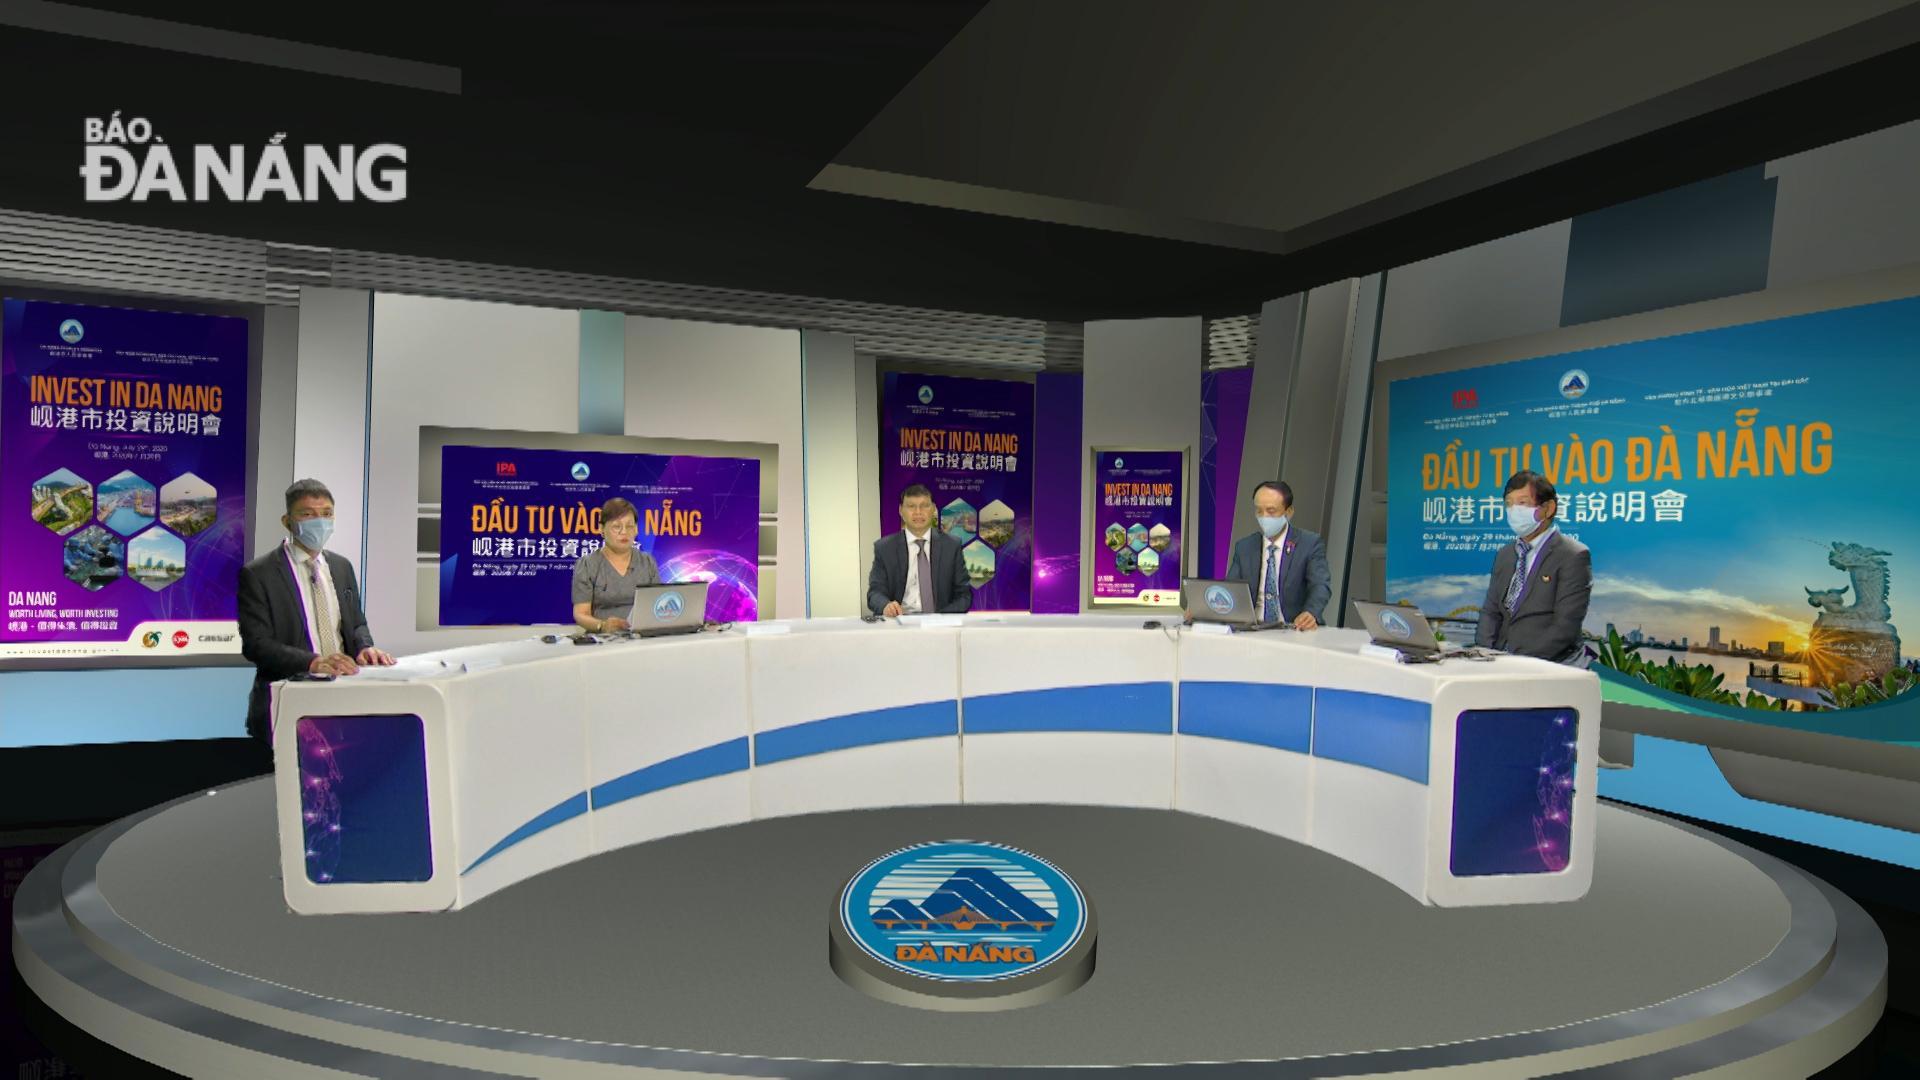 Quang cảnh Hội nghị xúc tiến đầu tư trực tuyến vào Đà Nẵng dành cho thị trường Đài Loan tại trường quay Đài Phát thanh - Truyền hình Đà Nẵng. Ảnh: PHONG LAN